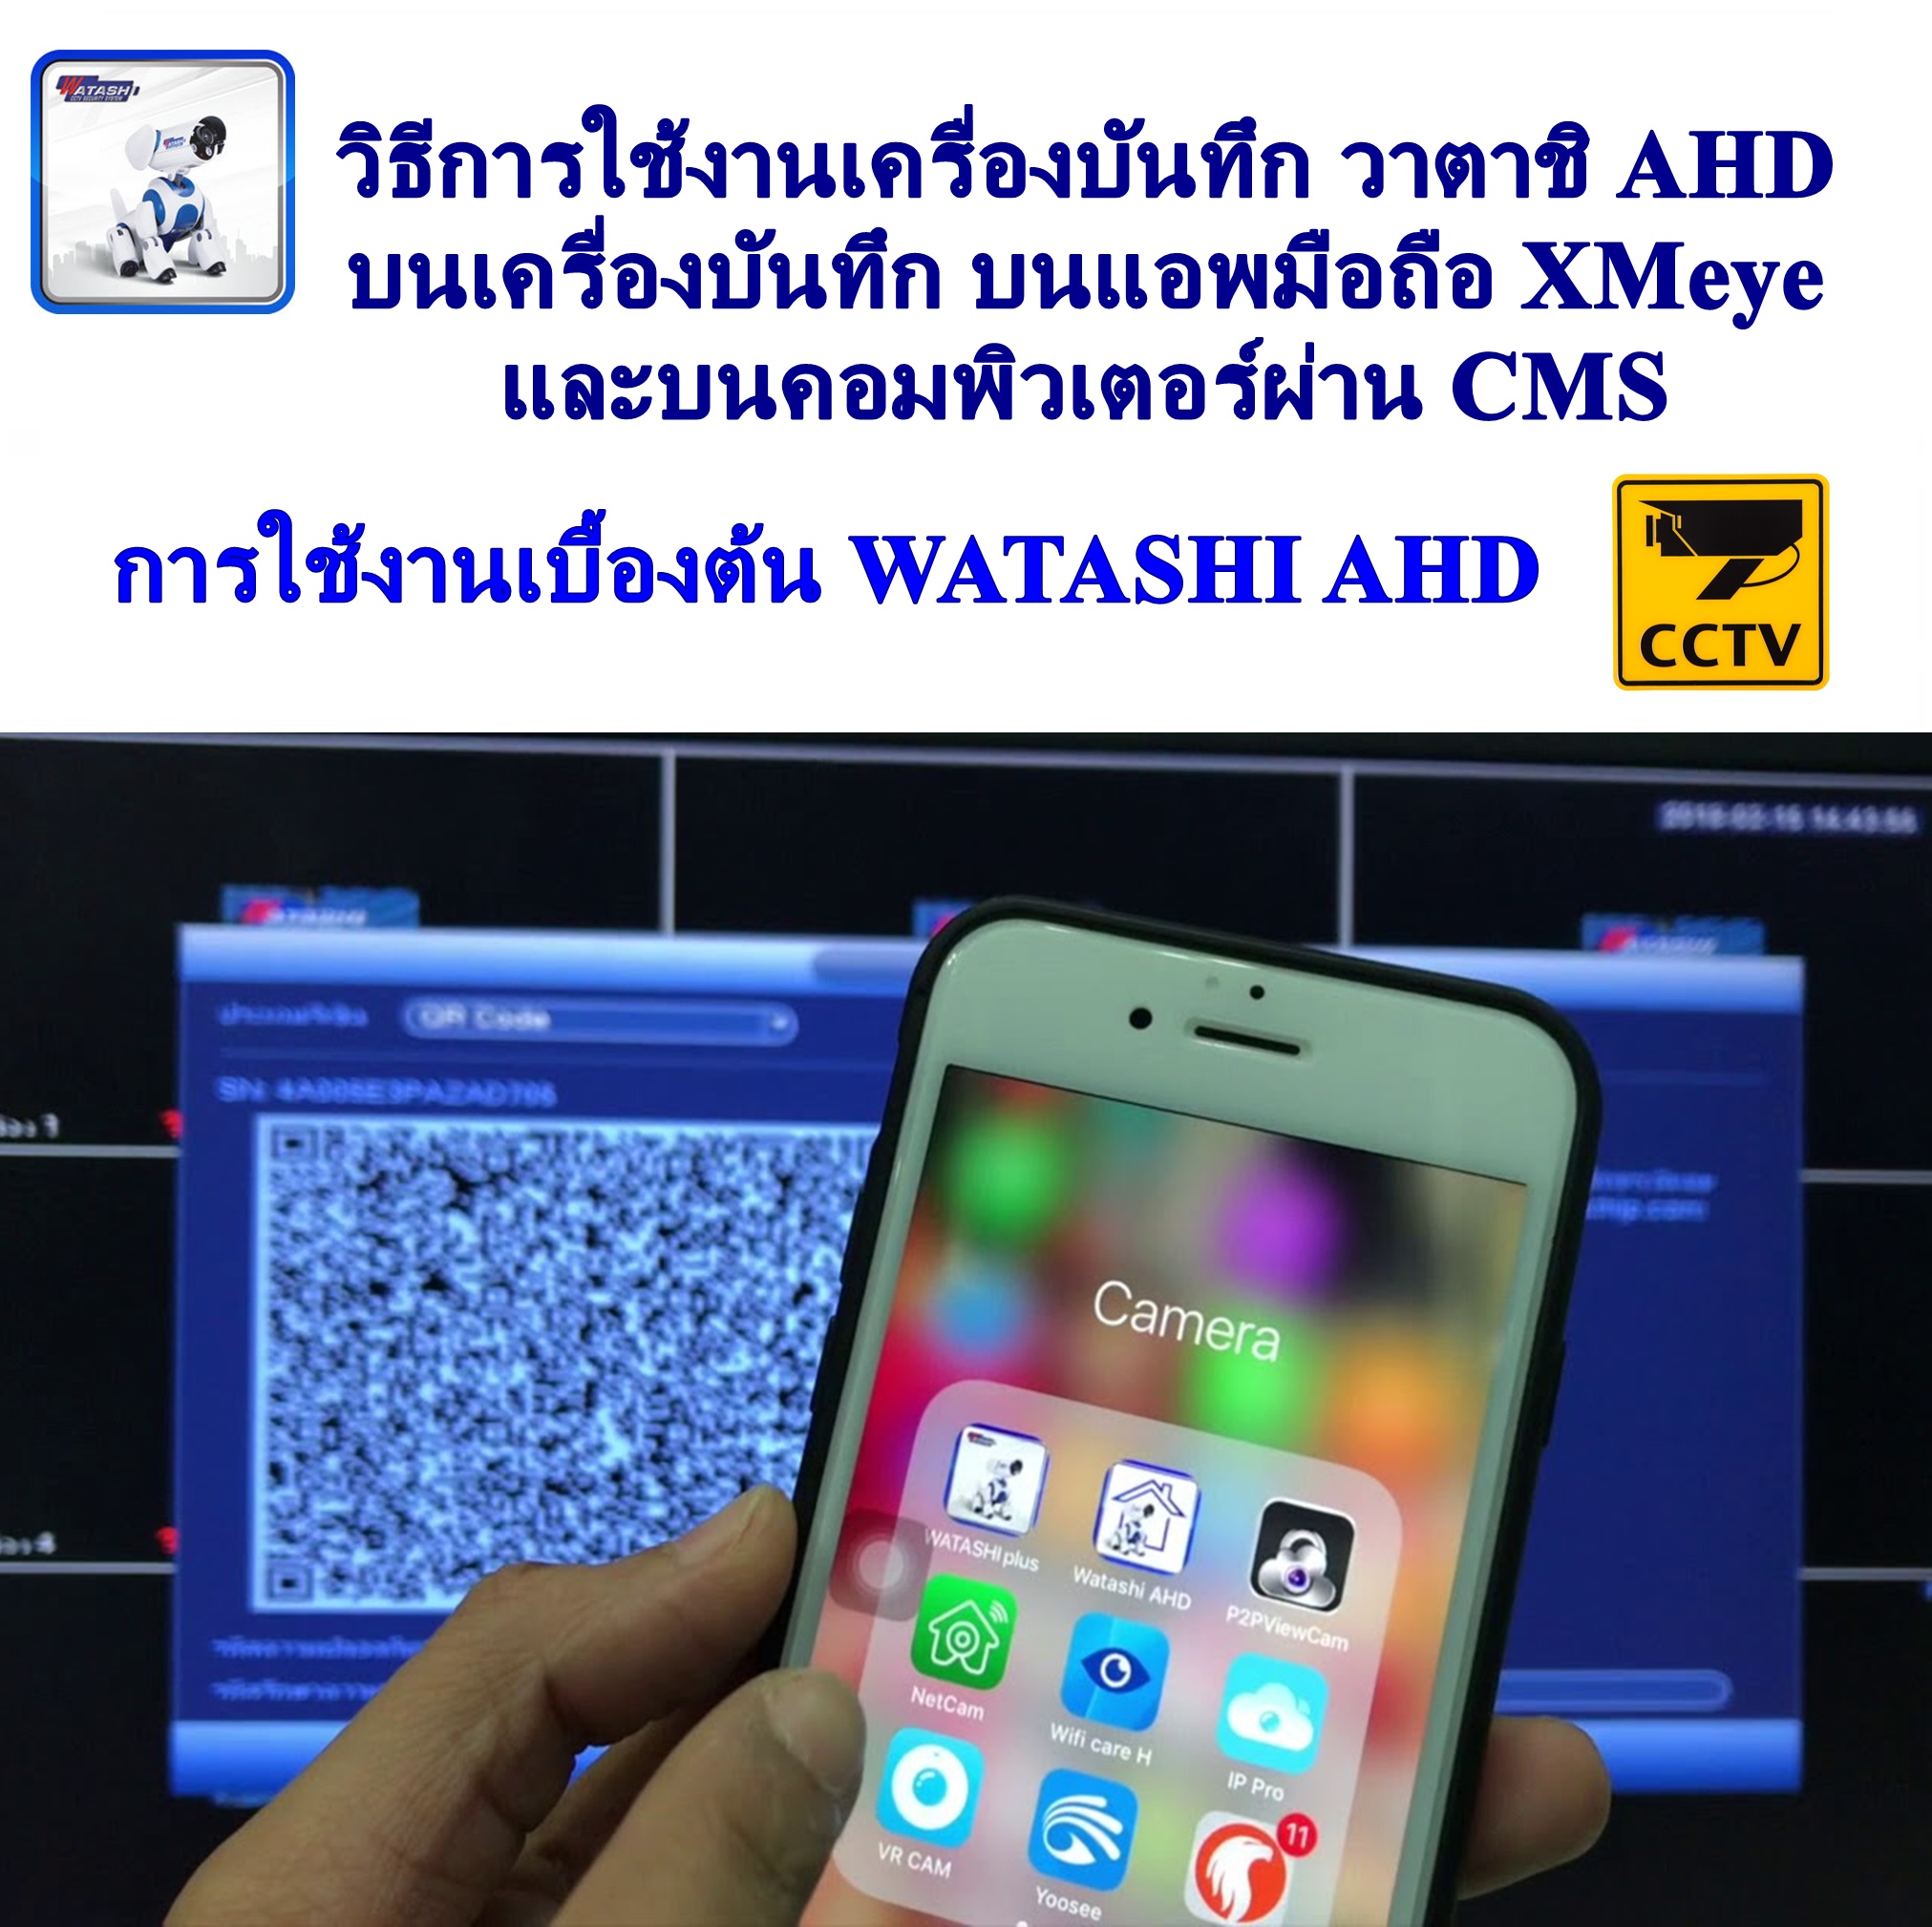 การใช้งานเบื้องต้น WATASHI AHD วิธีการใช้งานเครื่องบันทึก วาตาชิ AHD บนเครื่องบันทึก บนแอพมือถือ XMeye และบนคอมพิวเตอร์ผ่าน CMS